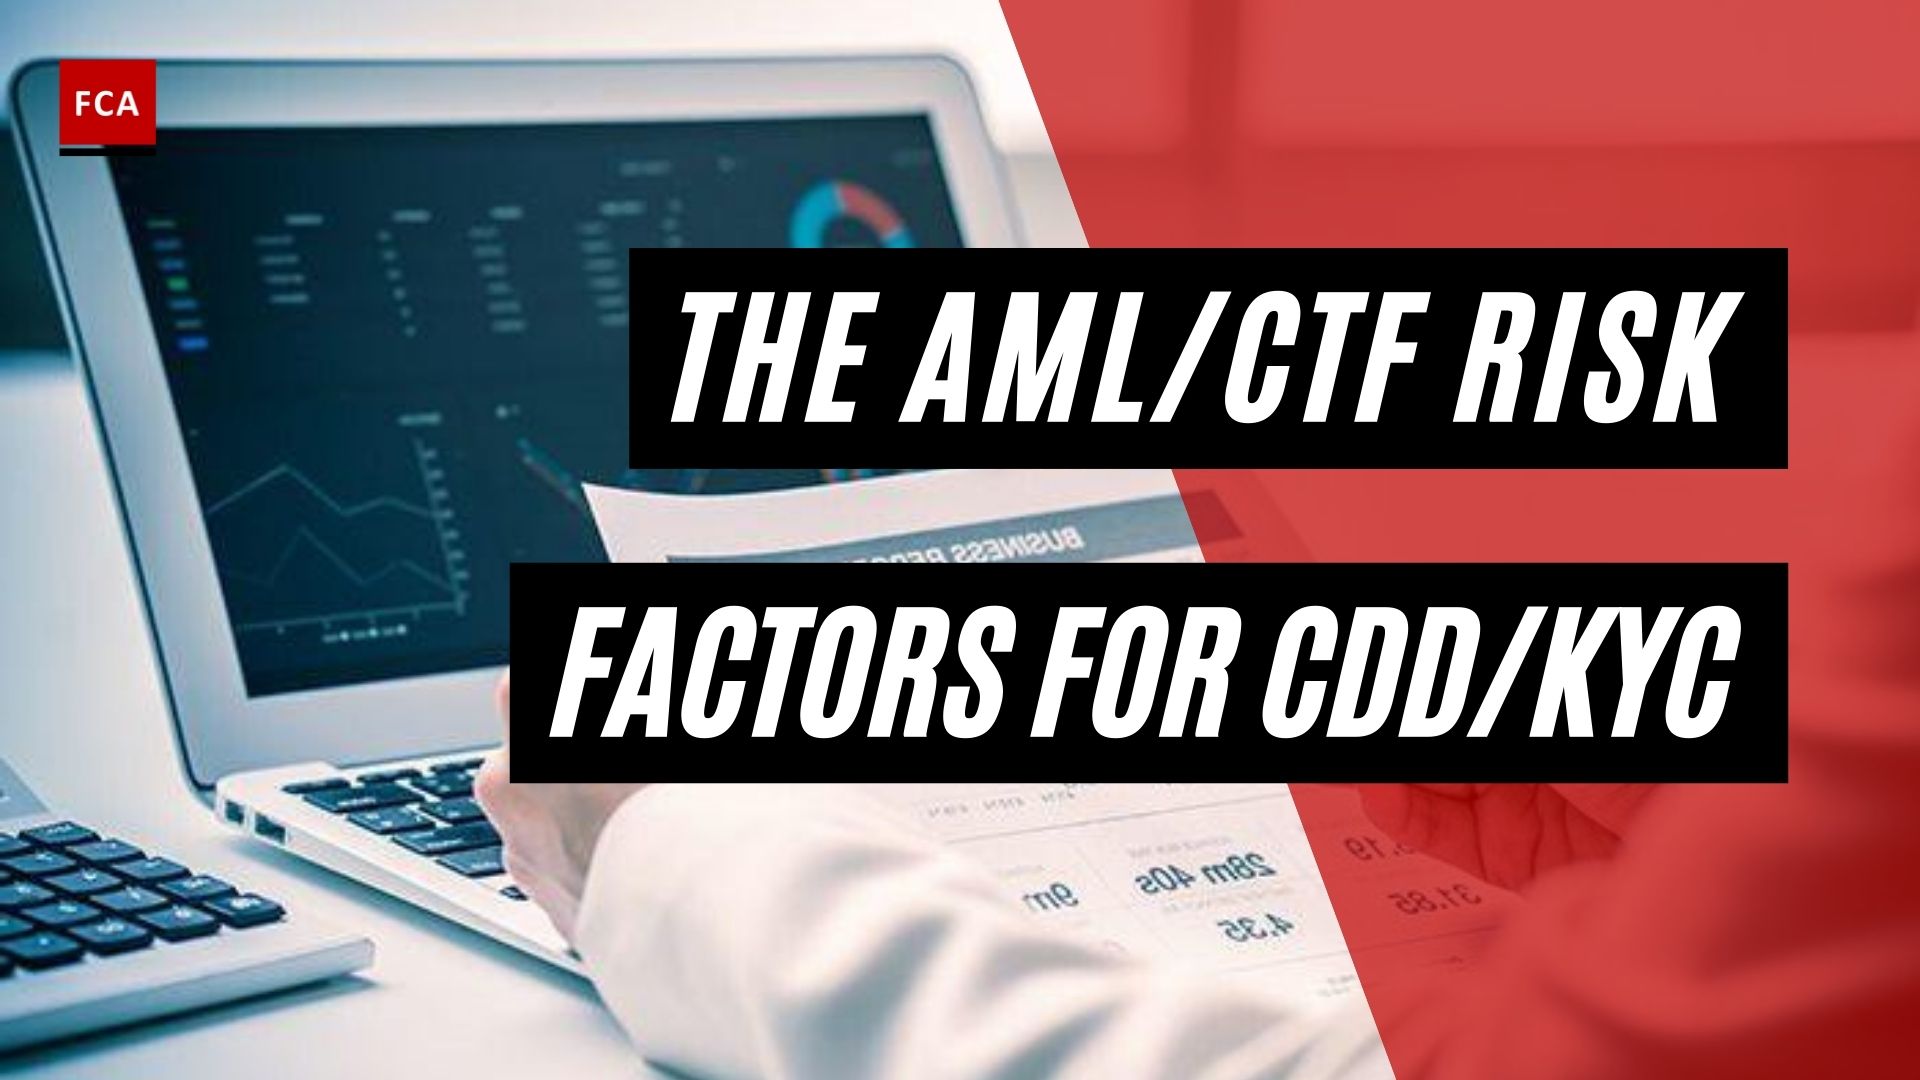 Aml/Ctf Risk Factors For Cdd/Kyc